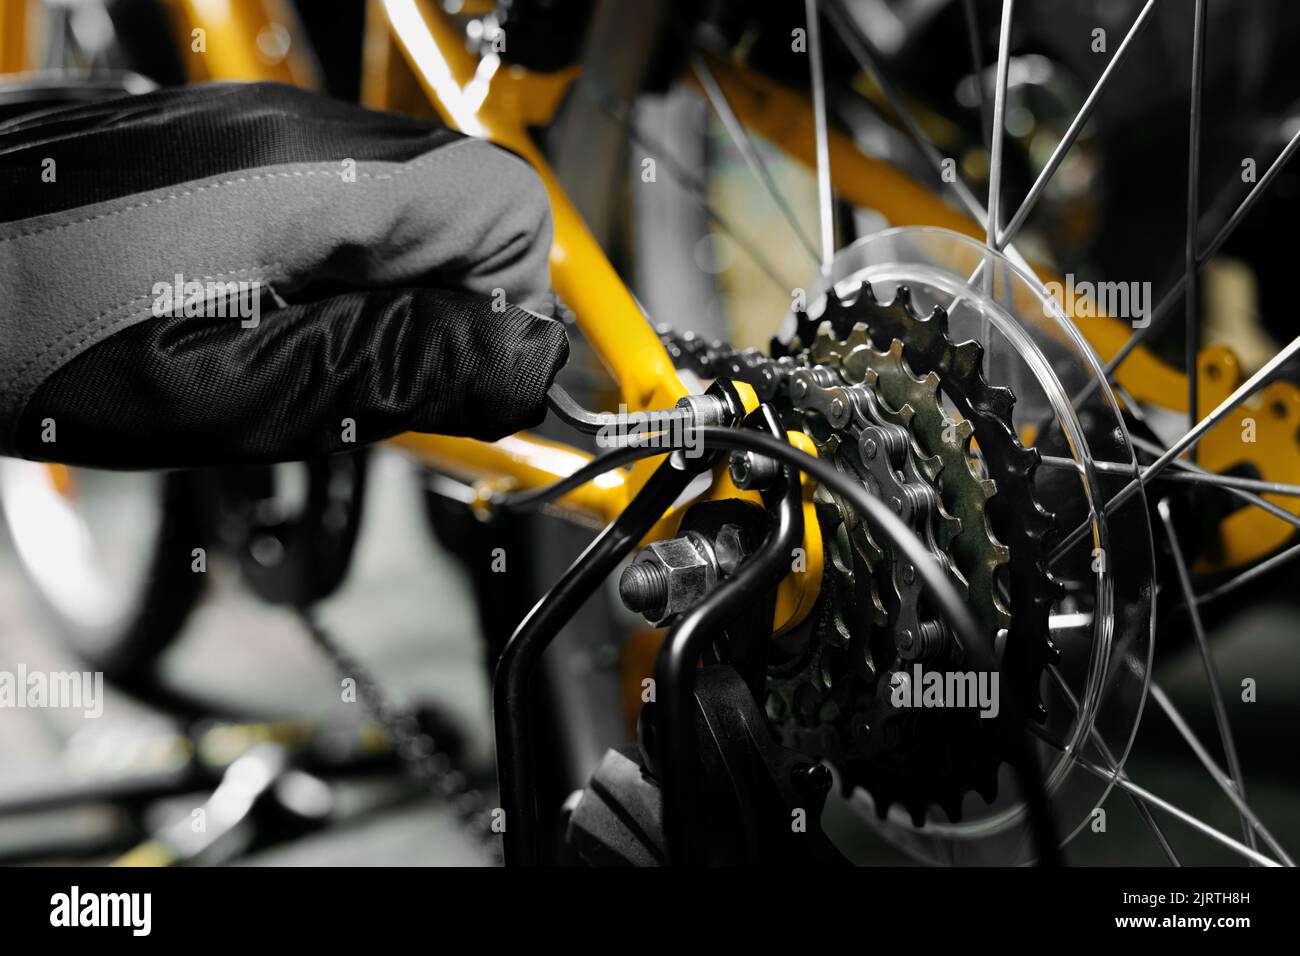 entretien et réparation de bicyclettes. mécanicien travaillant dans un atelier d'entretien de bicyclettes Banque D'Images